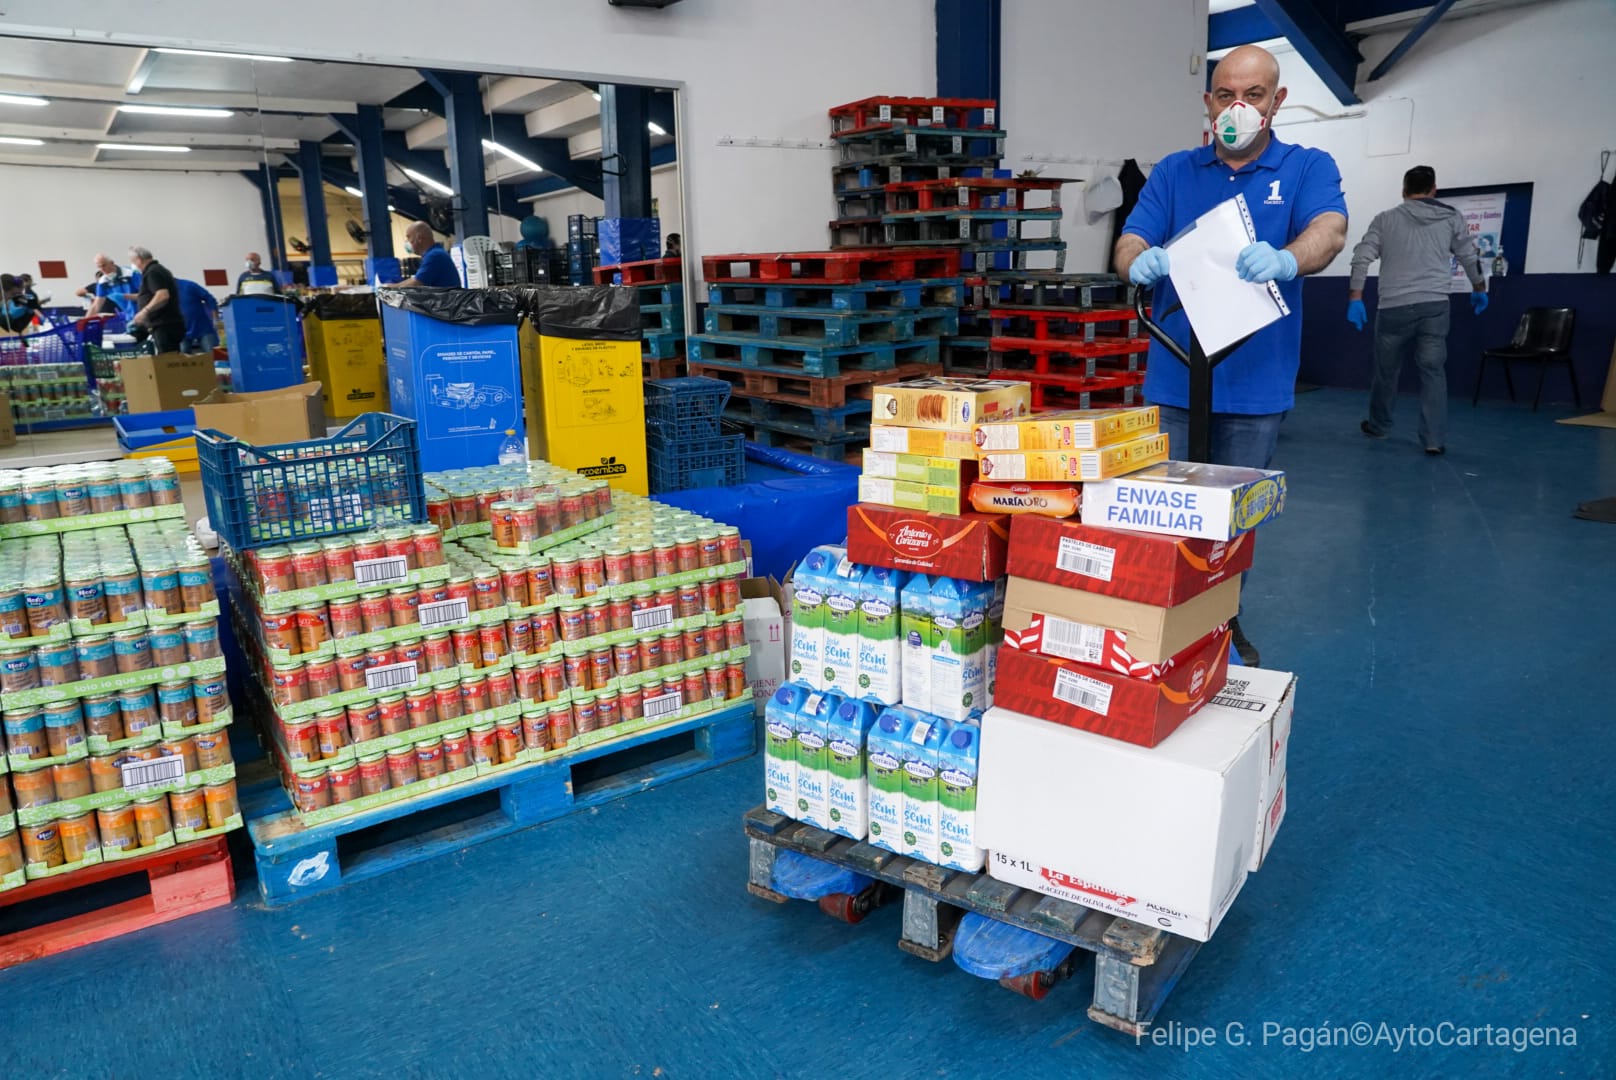 Donacin de alimentos del Club de mayores de San Antn al dispositivo de emergencia social